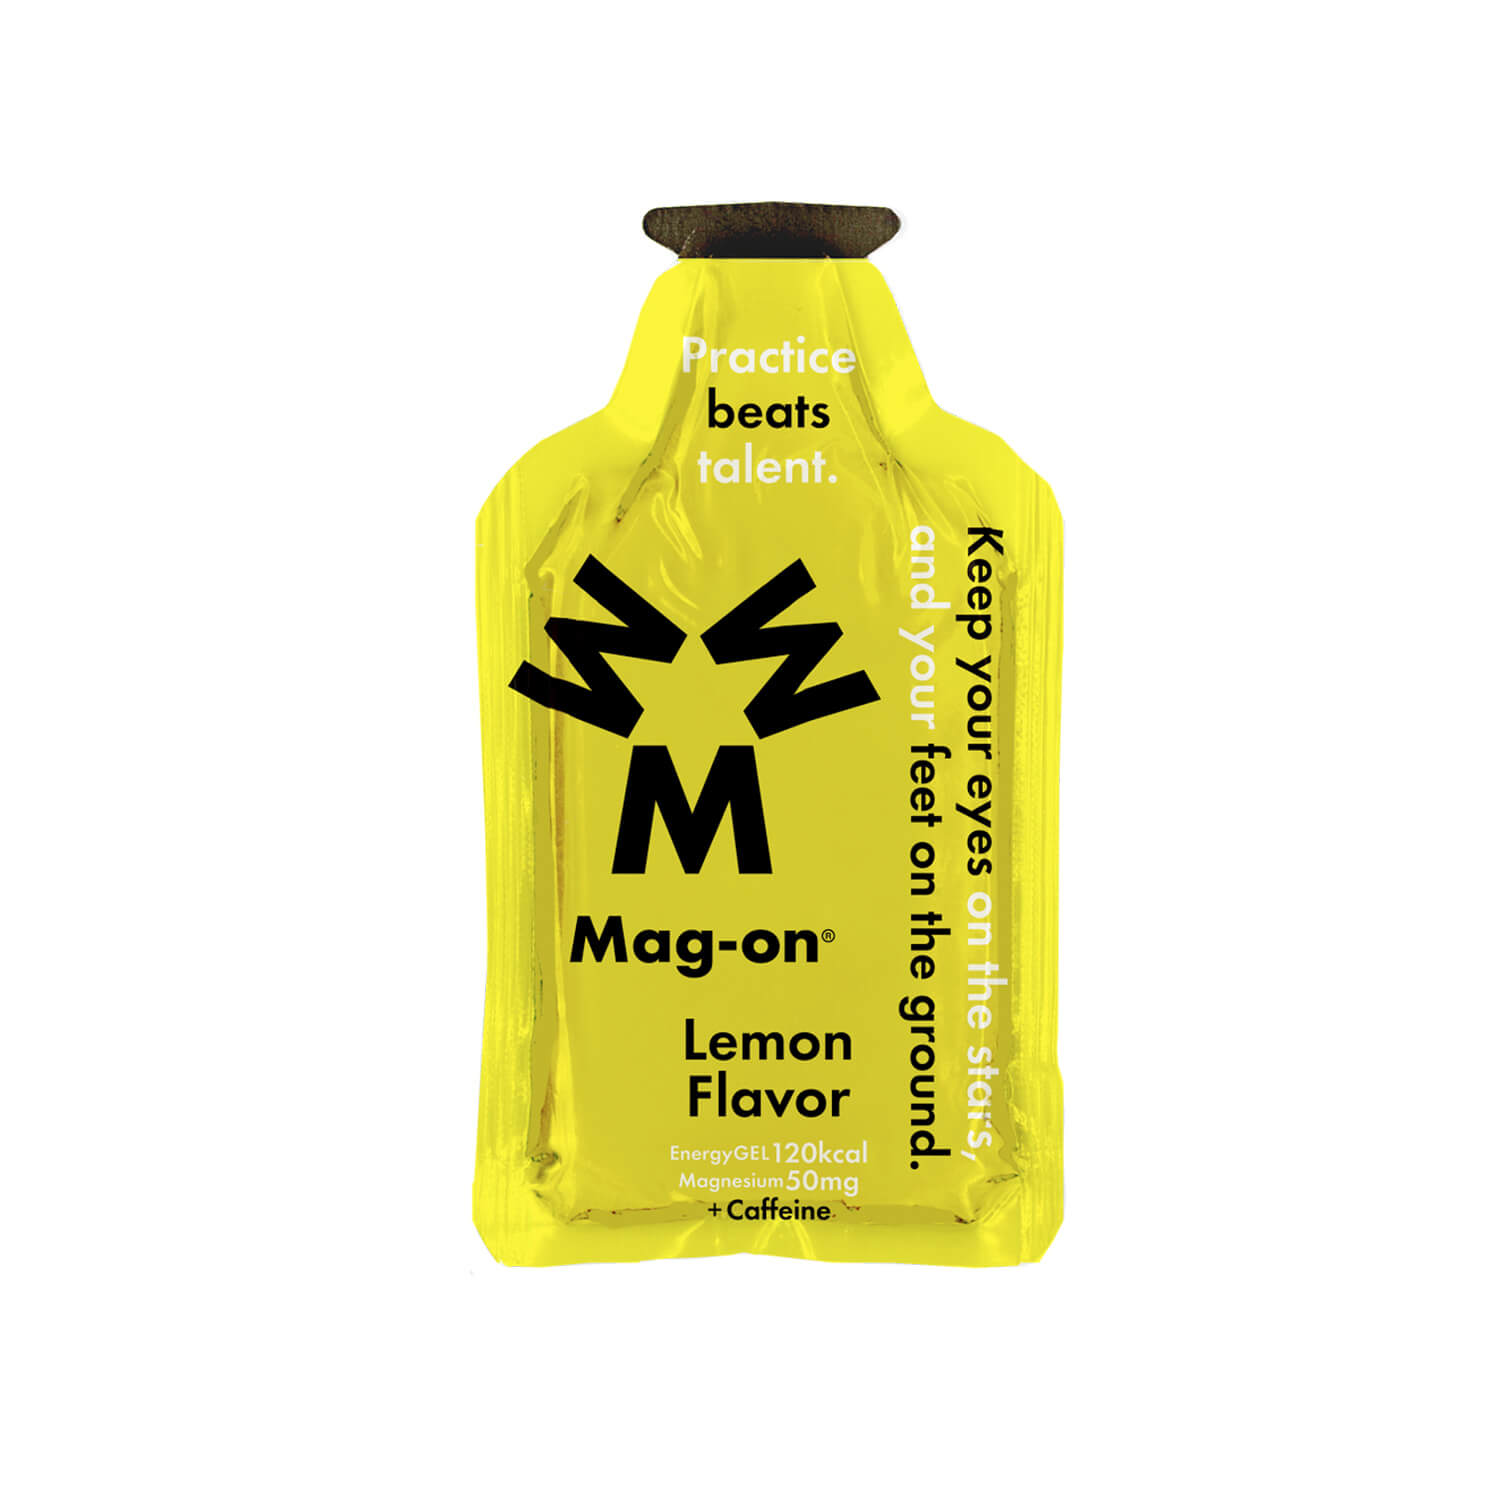  公式  Mag-on/マグオン ジェル TW210179 Mag-on® エナジージェル (12個入) マグネシウム・カフェイン含有  レモンフレーバー Lemon Flavor [ジェル・補給食] – STYLE BIKE